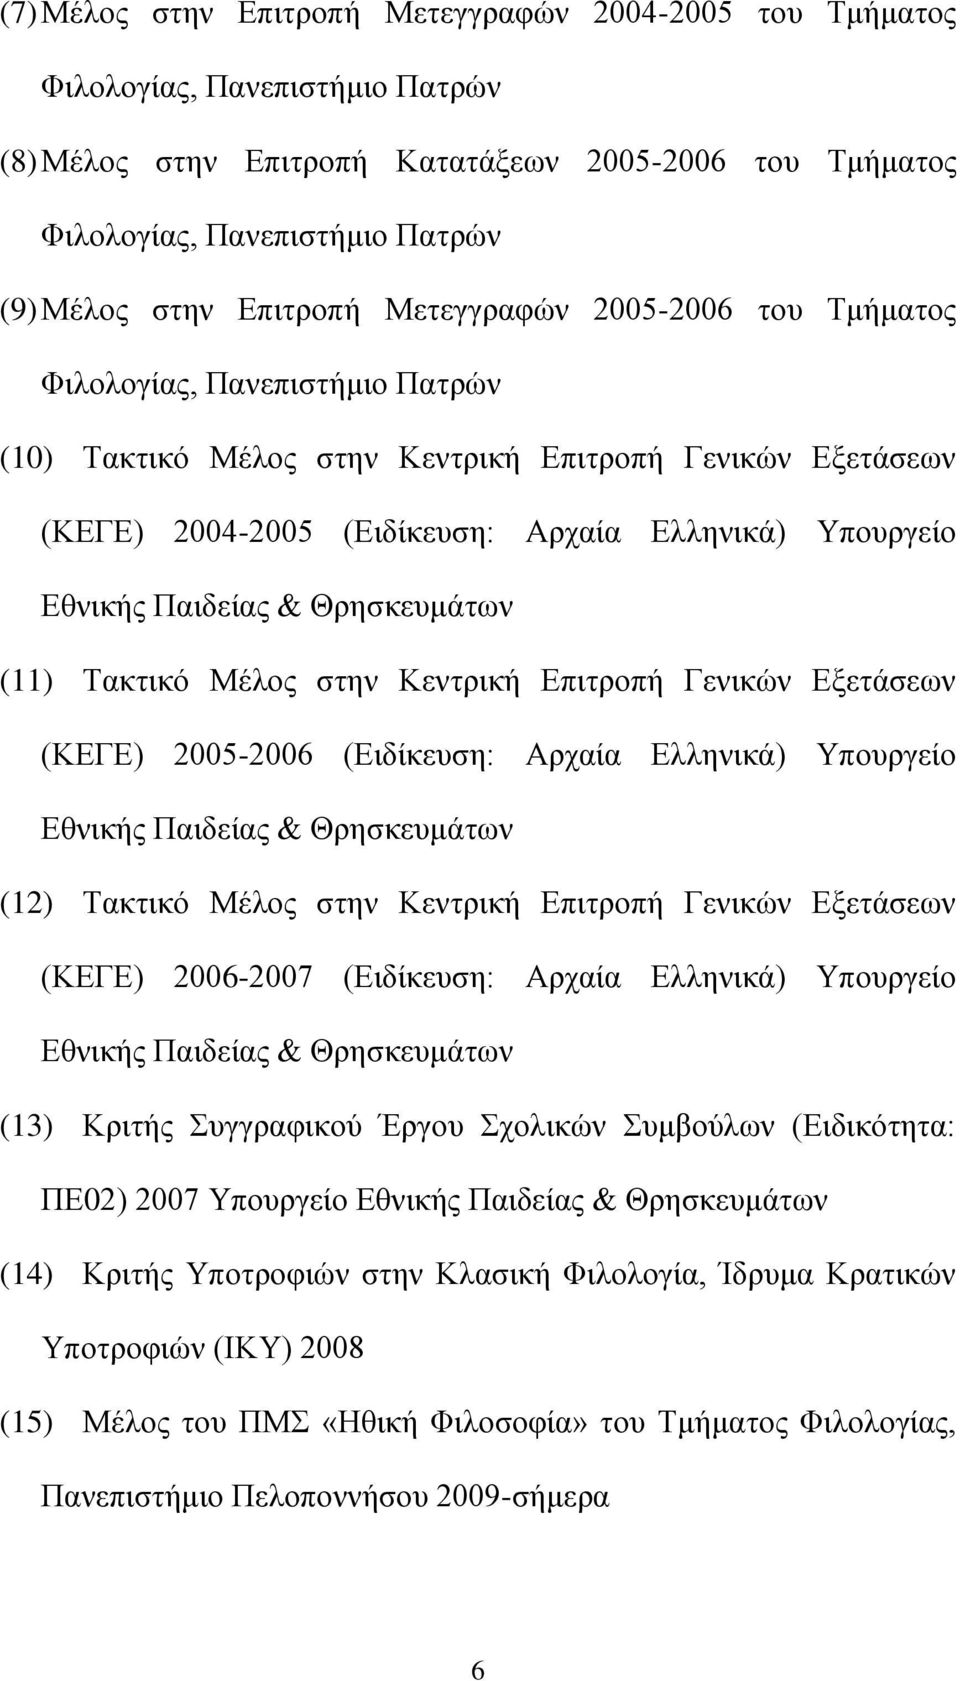 Παιδείας & Θρησκευμάτων (11) Τακτικό Μέλος στην Κεντρική Επιτροπή Γενικών Εξετάσεων (ΚΕΓΕ) 2005-2006 (Ειδίκευση: Αρχαία Ελληνικά) Υπουργείο Εθνικής Παιδείας & Θρησκευμάτων (12) Τακτικό Μέλος στην